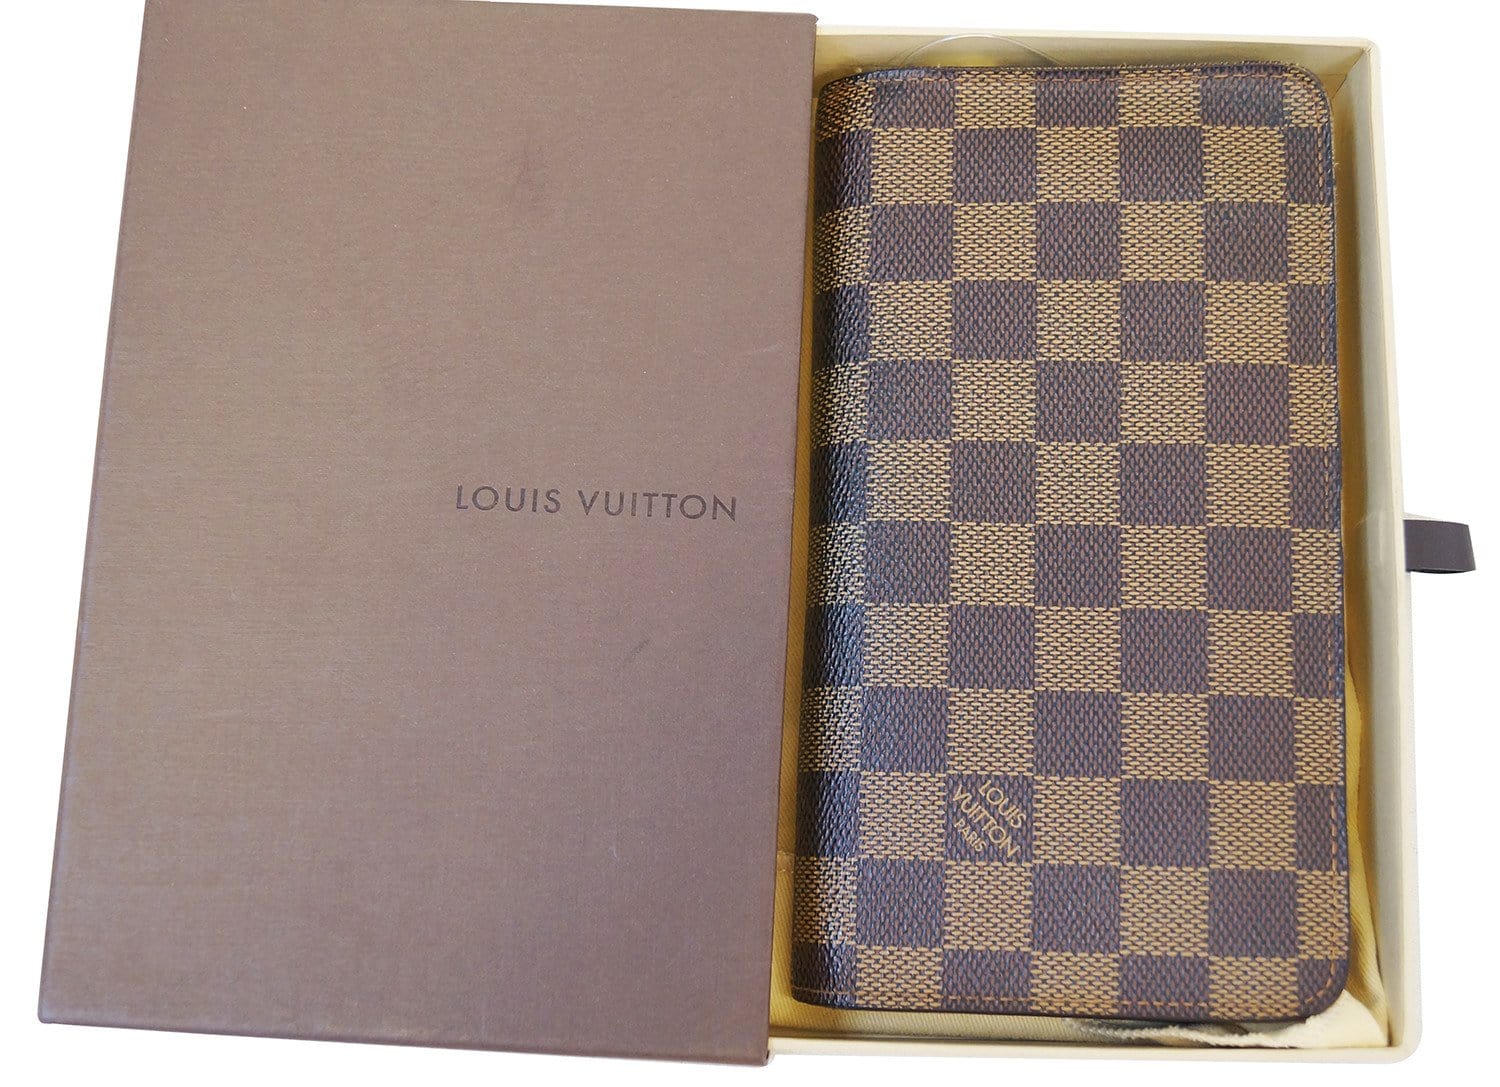 Authentic Vintage Louis Vuitton Porte Monnaie Monogram Zippy Long Wallet